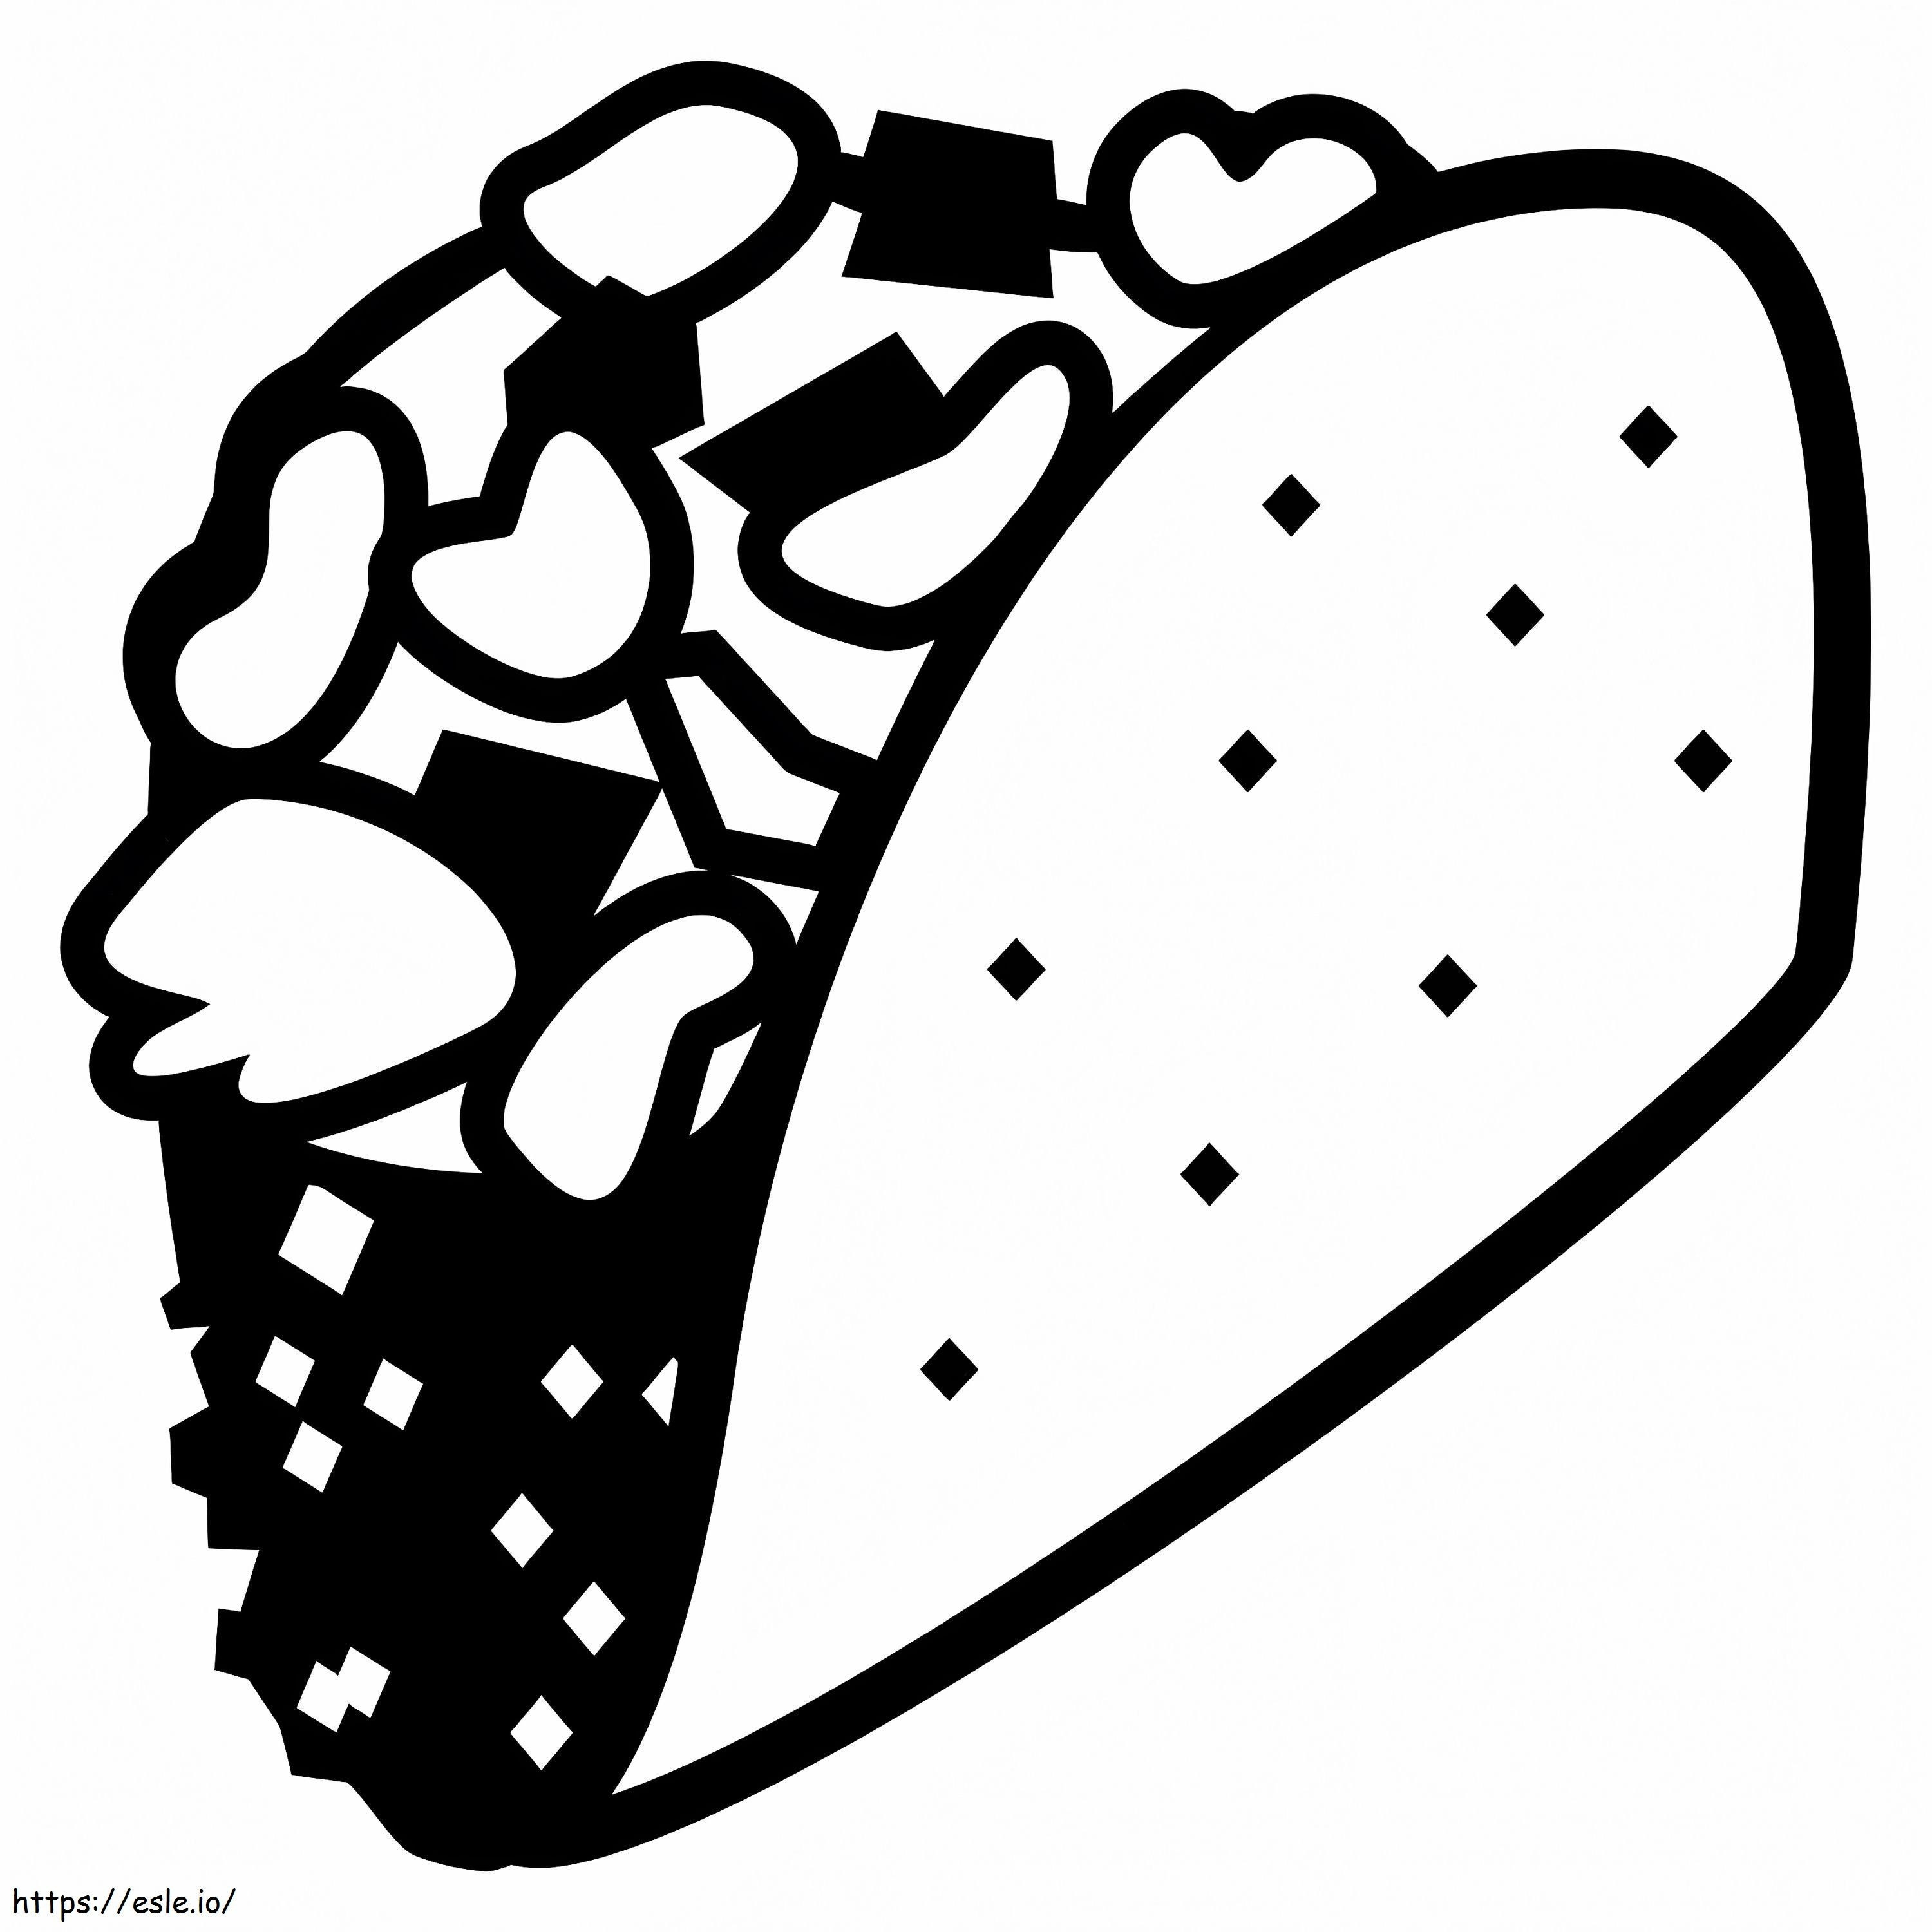 Egy Taco kifestő